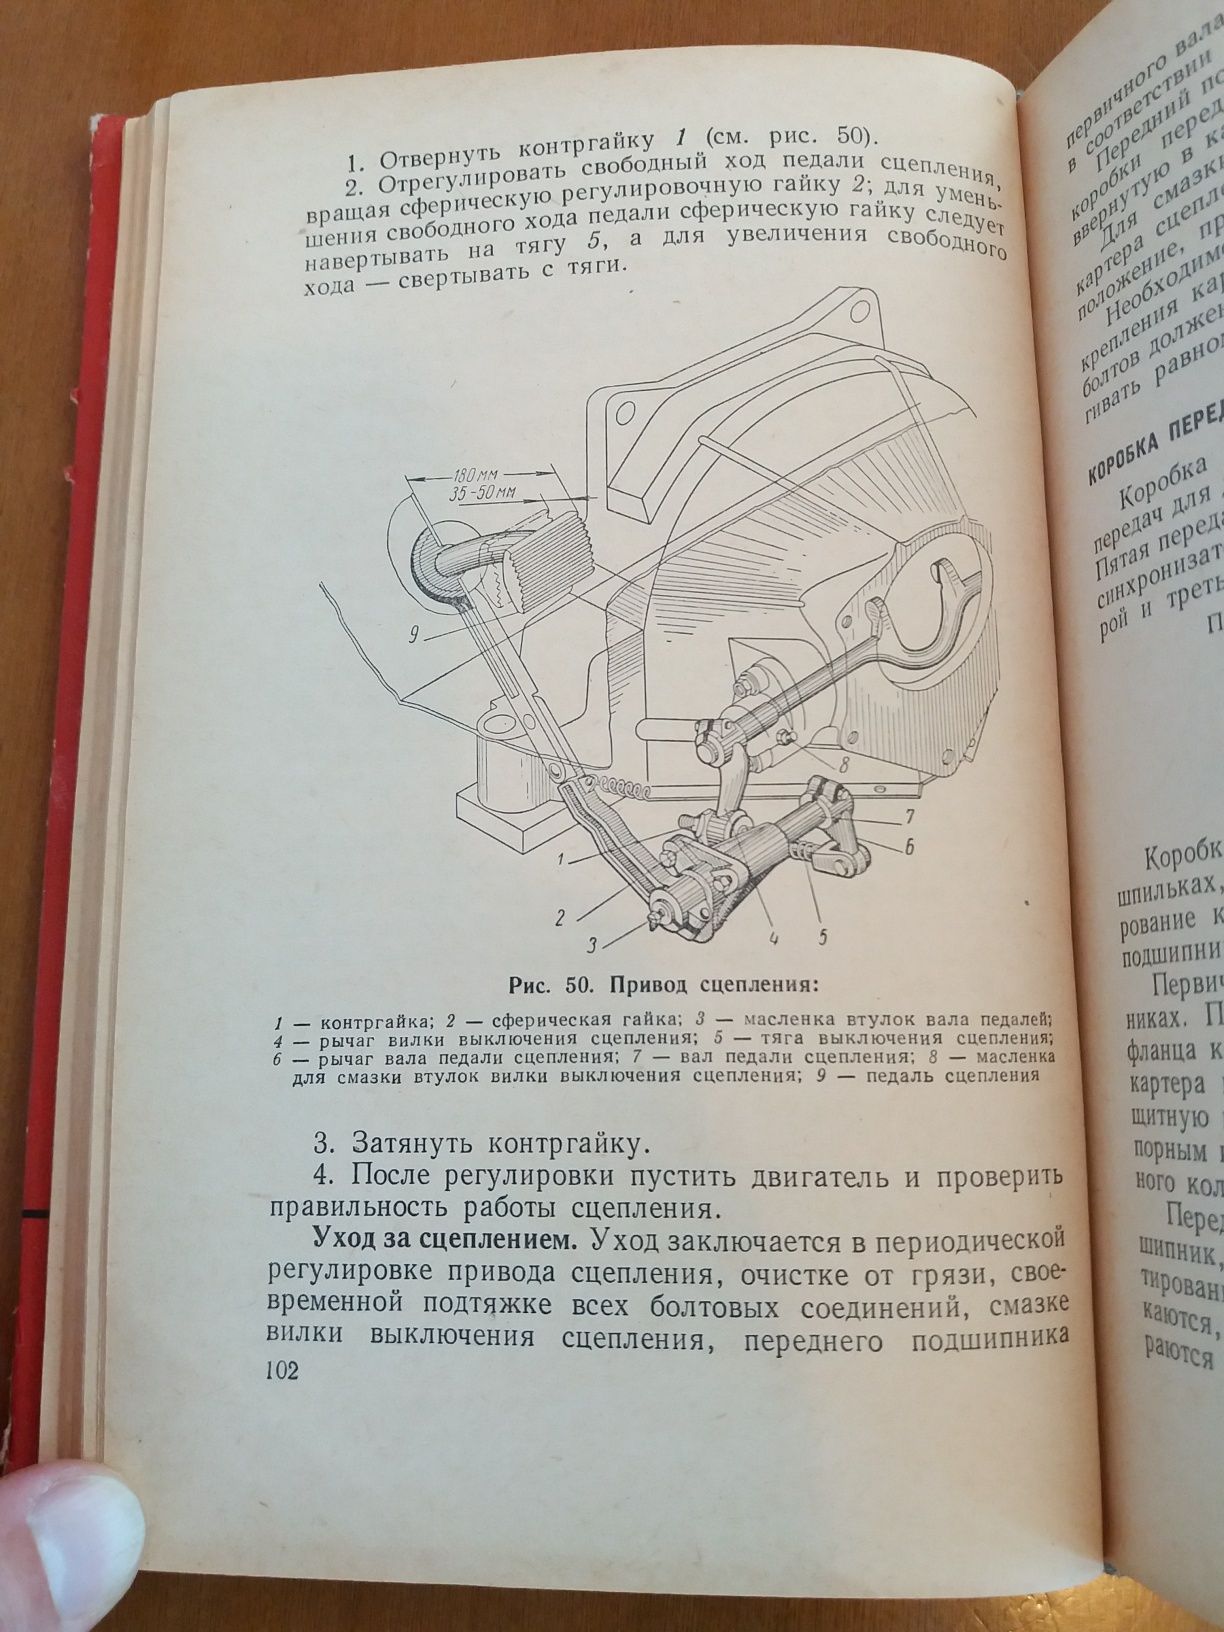 Ретро авто книга "Автомобиль ЗИЛ-130 Инструкция по эксплуатации"